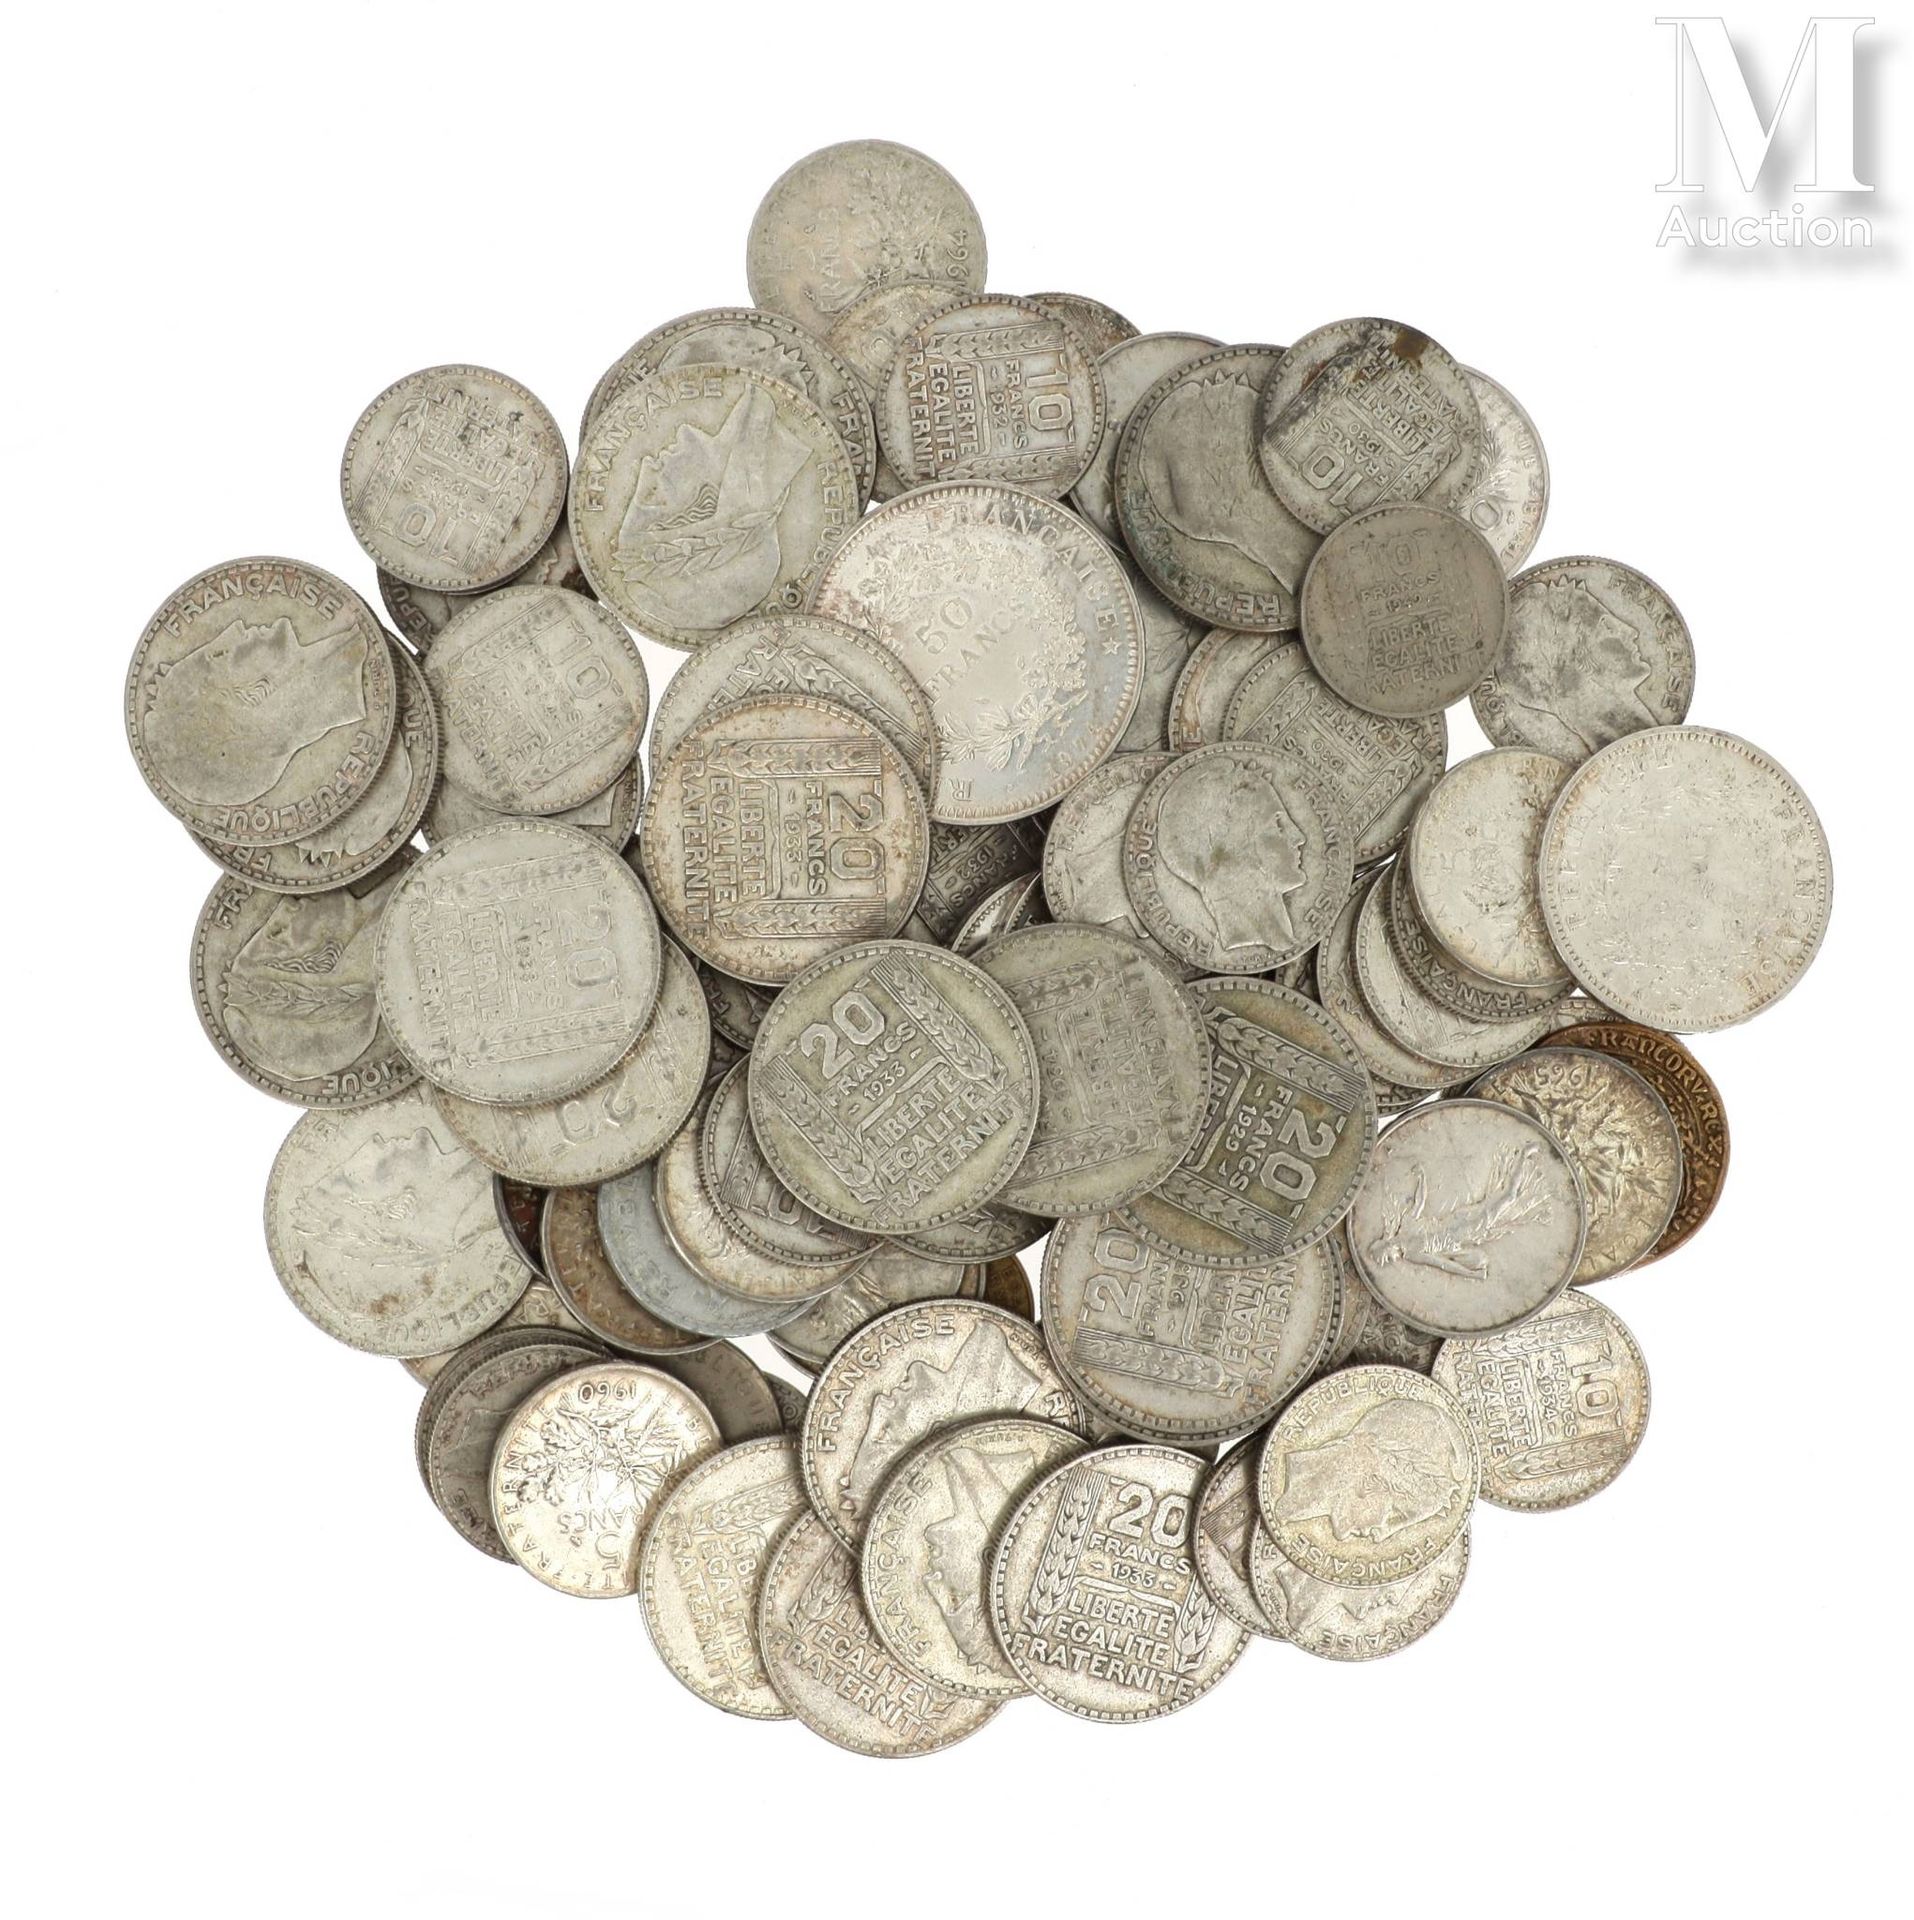 LOT DE PIECES DE MONNAIE EN ARGENT Lotto di monete d'argento tra cui : 

- 1 x 1&hellip;